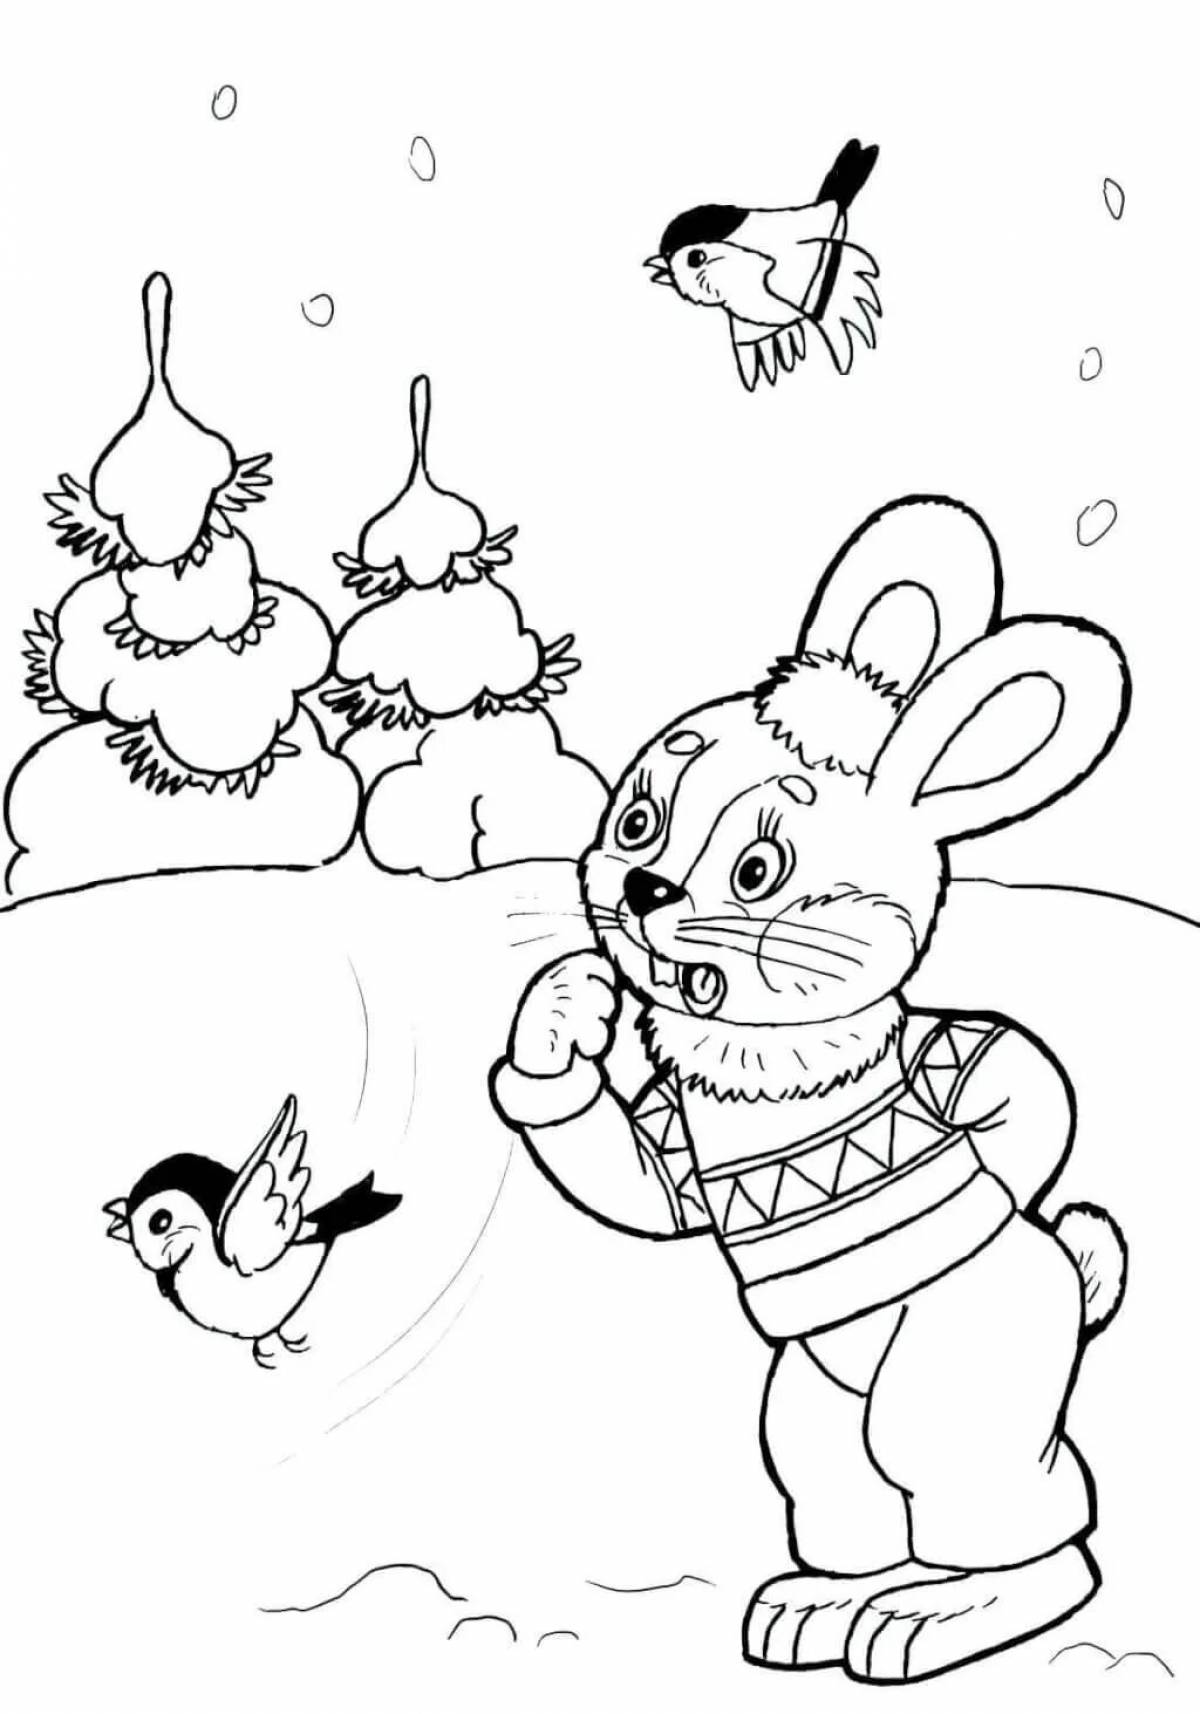 Fairy tale mitten for children #2